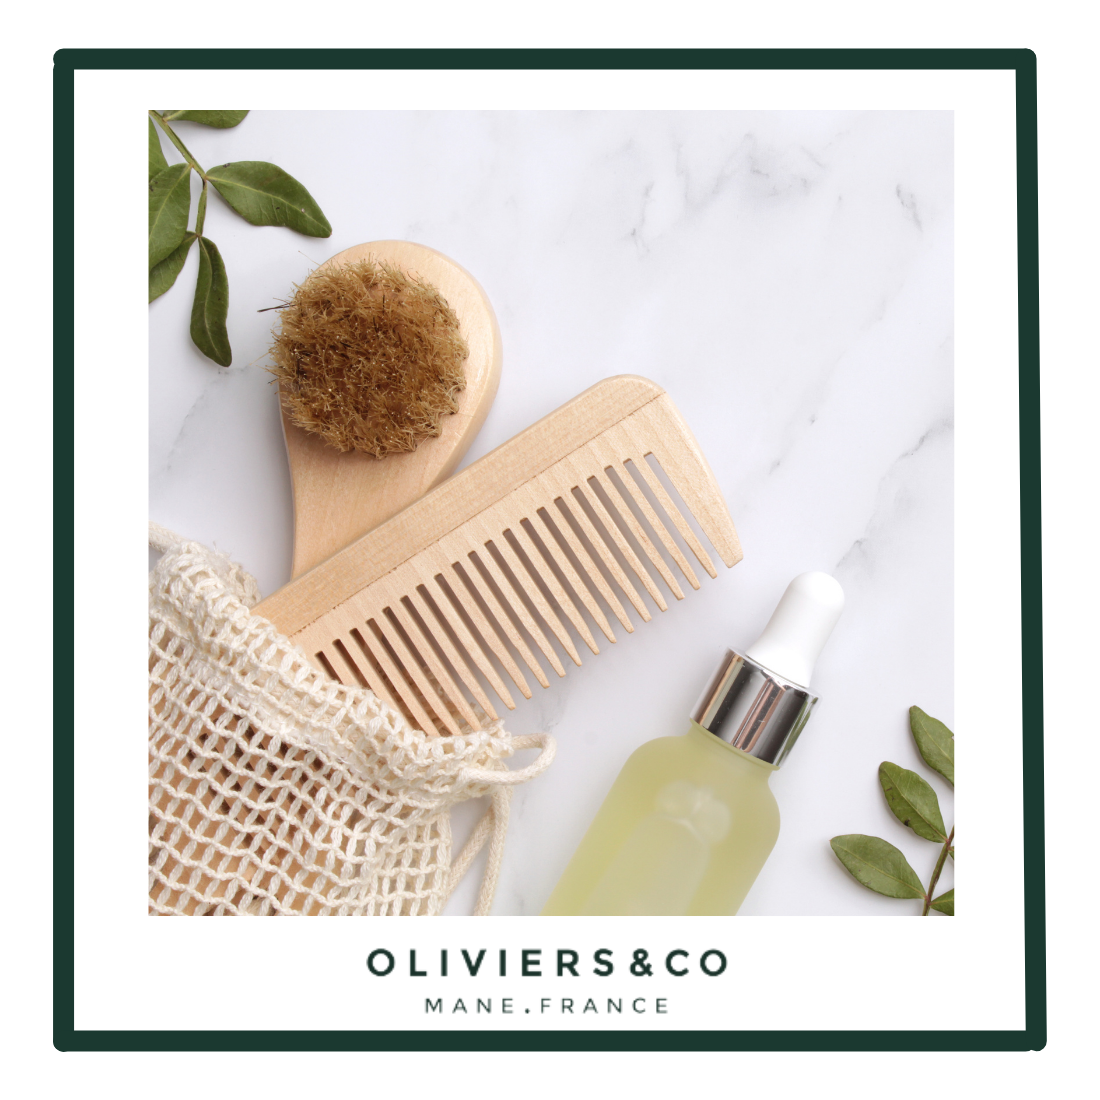 L’huile d’olive : un bienfait pour les cheveux et le visage